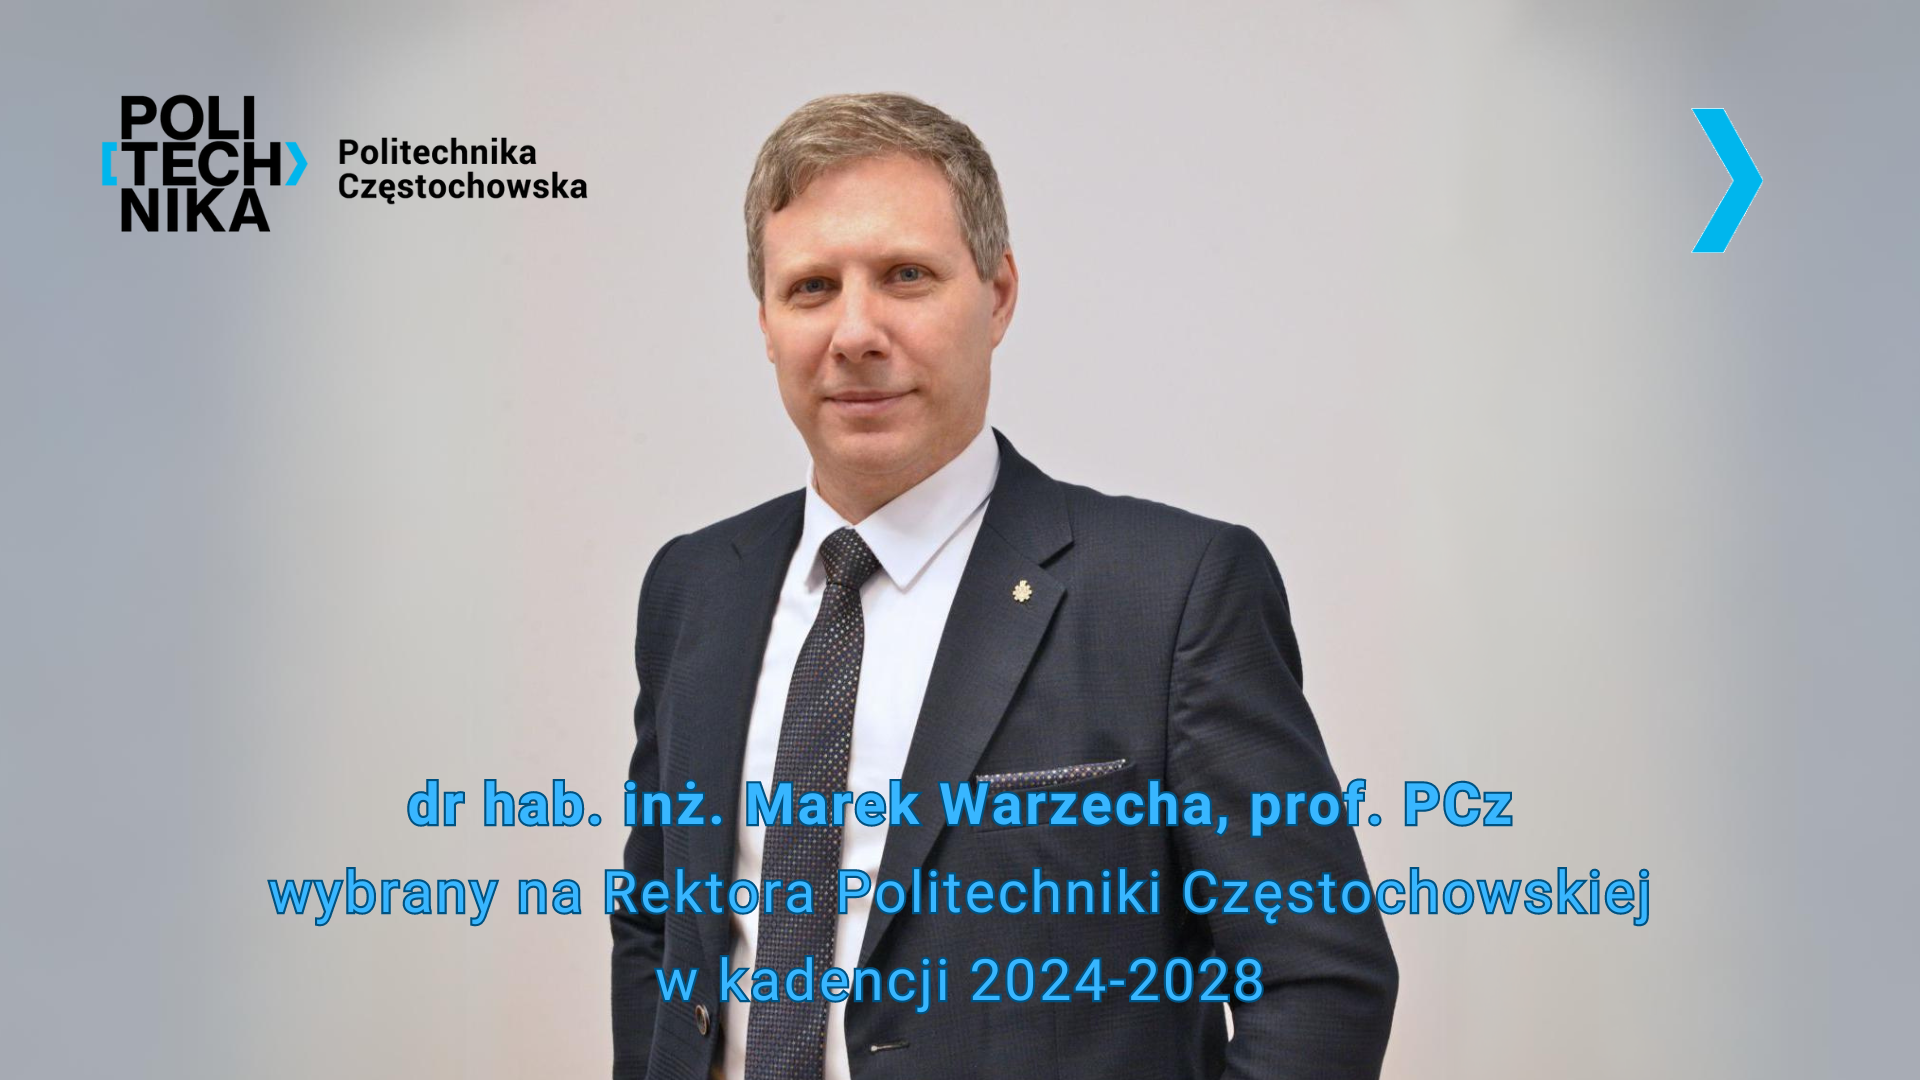 Rektorem Politechniki Częstochowskiej w kadencji 2024-2028 został wybrany dr hab. inż. Marek Warzecha, prof. PCz.